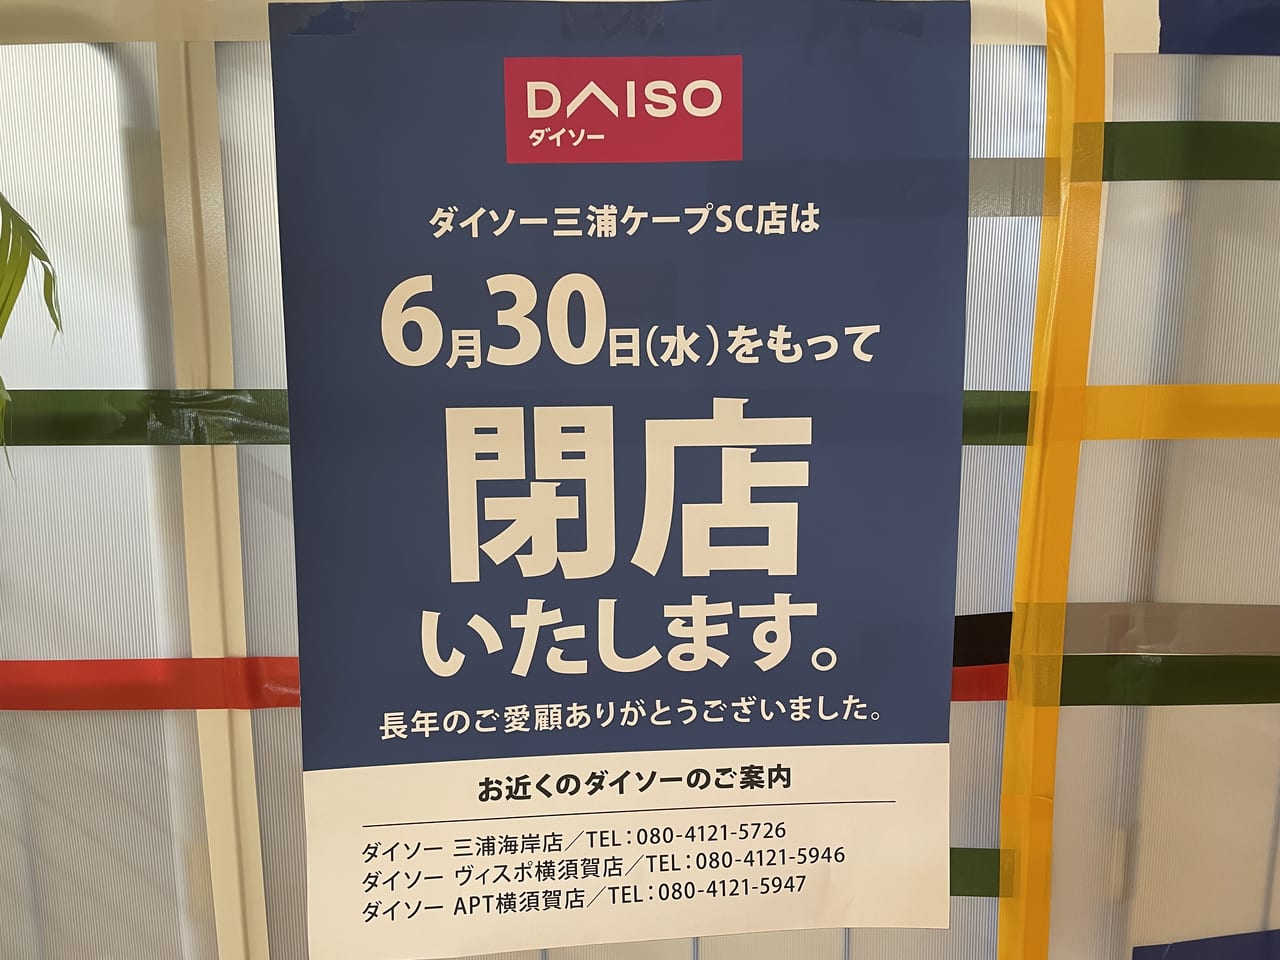 三浦市 ダイソー三浦ケープsc店が6月30日に閉店していました 号外net 横須賀市 三浦市